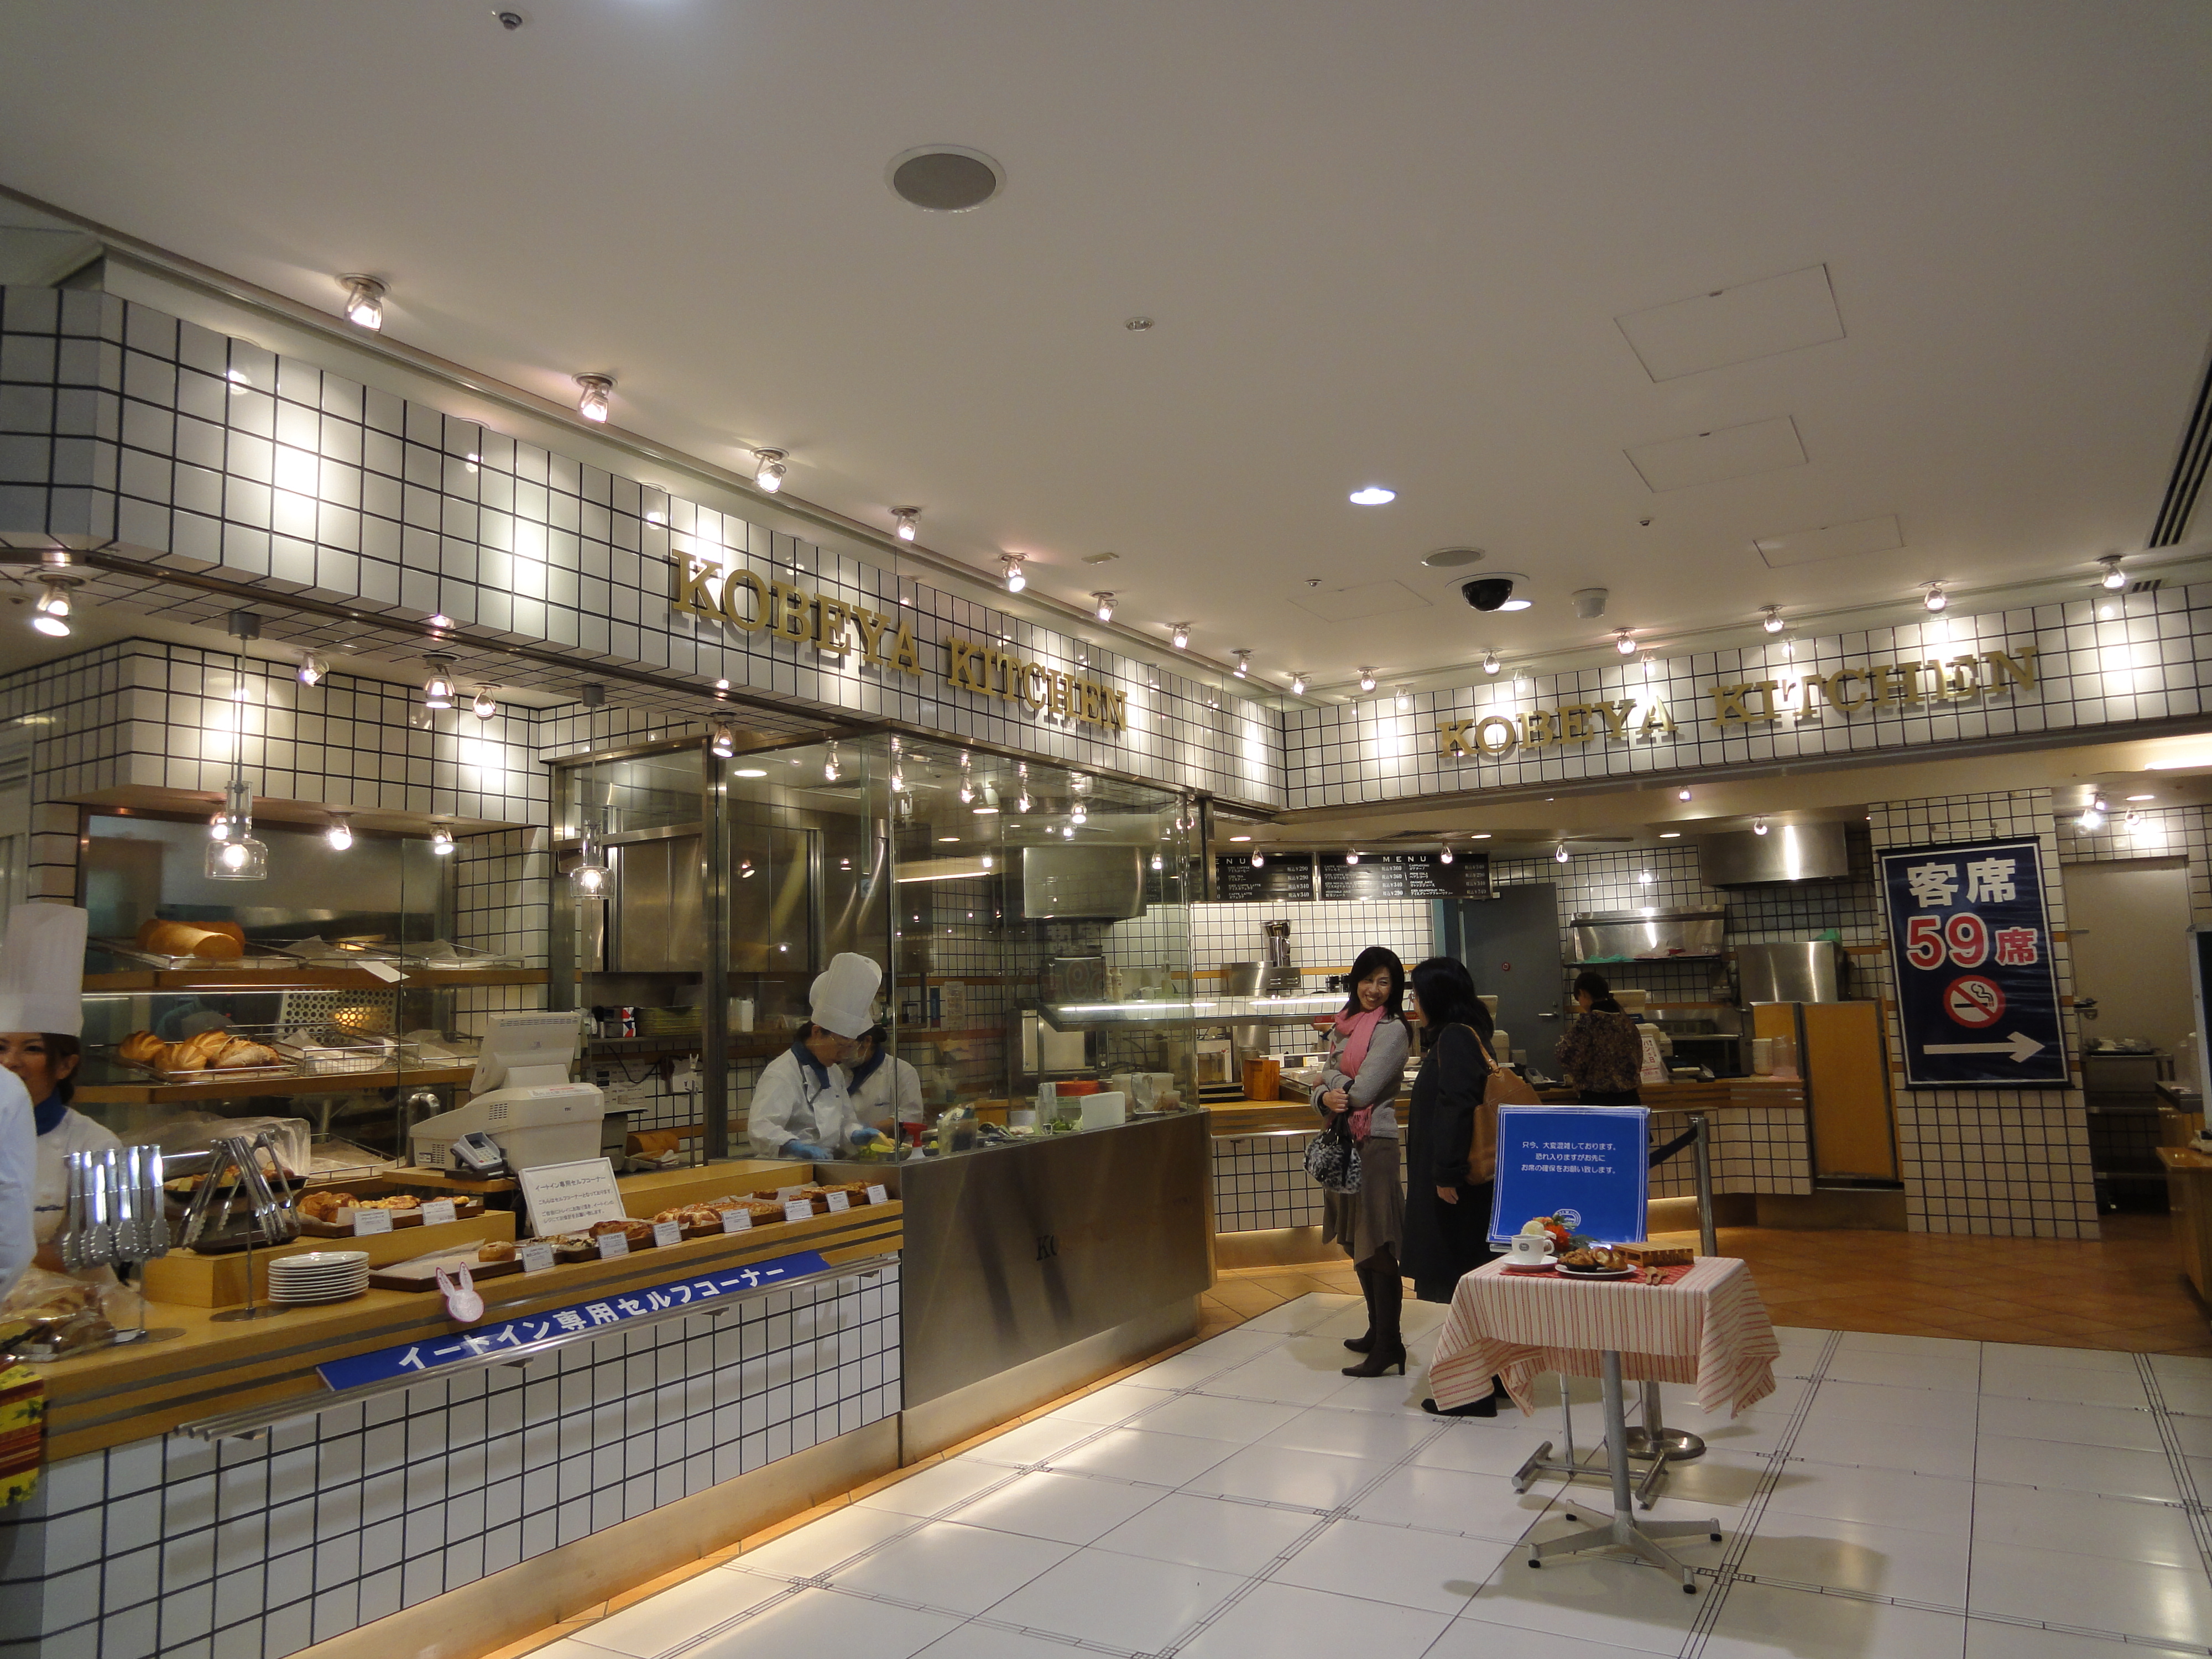 Kobeya Kitchen うるうる Mio様の名古屋食べ歩き日記